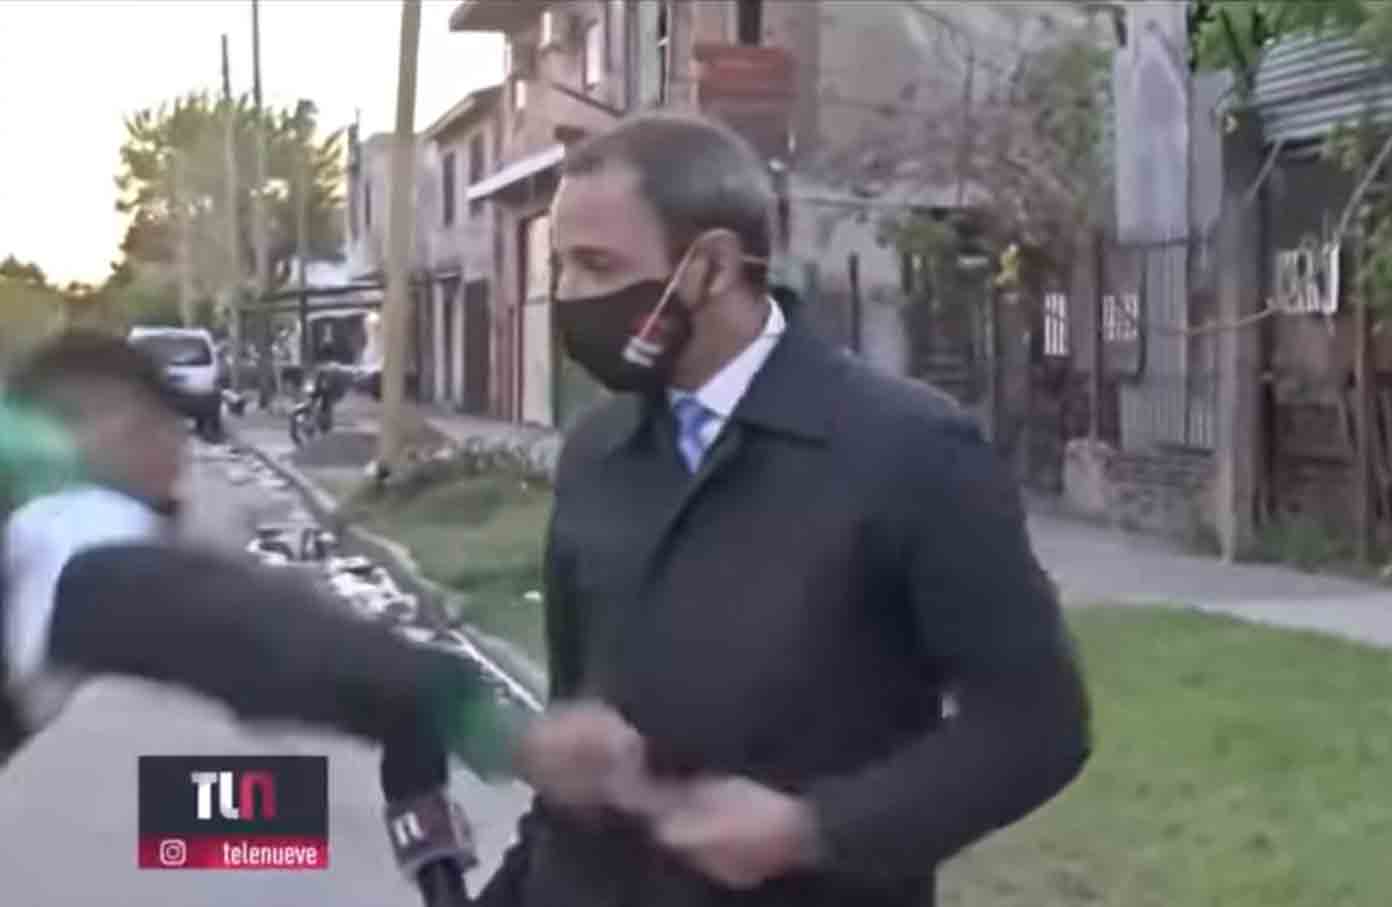 Telefone de jornalista argentino roubado pouco antes da transmissão ao vivo em Buenos Aires. Foto: Reprodução Ypooutube